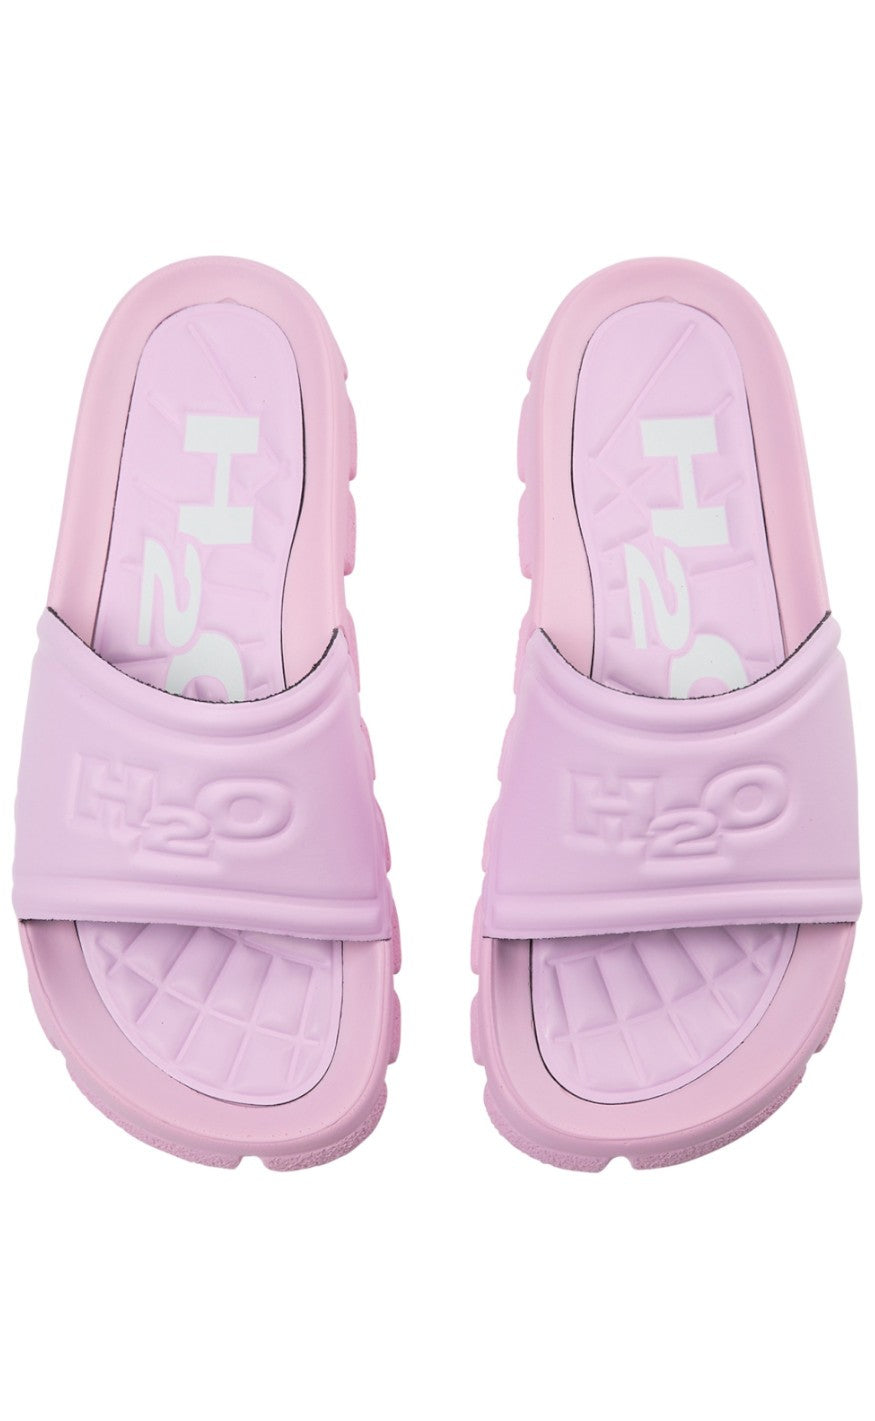 5: H2O Sandal - Trek - Light Pink